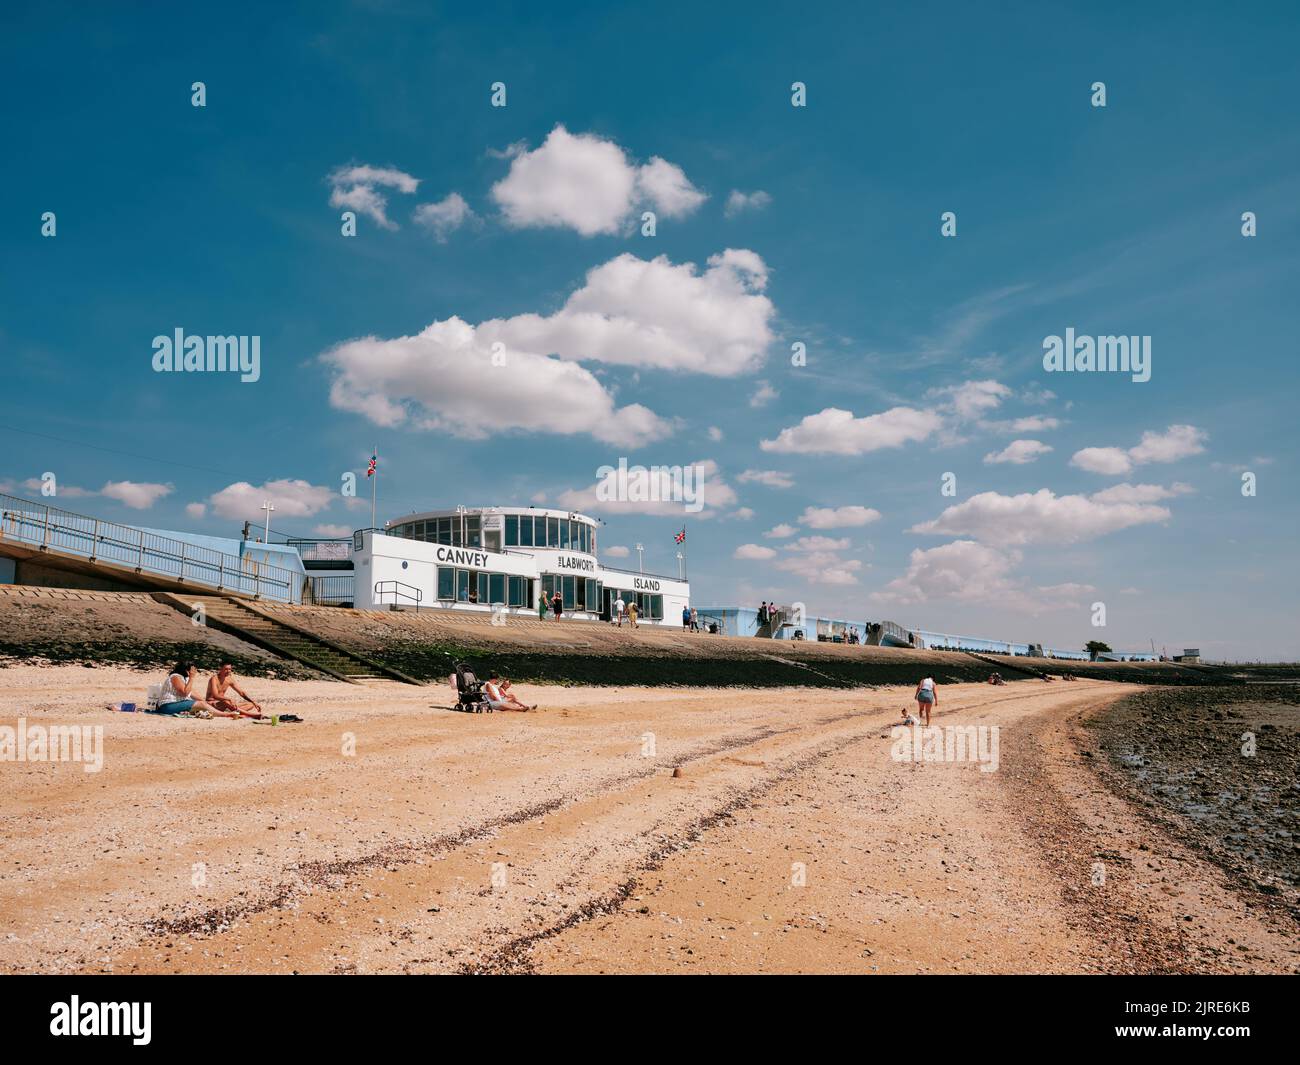 L'architettura modernista del Labworth Cafe e la costa estiva della spiaggia di bassa marea di Canvey Island, Thames Estuary, Essex, Inghilterra, Regno Unito Foto Stock